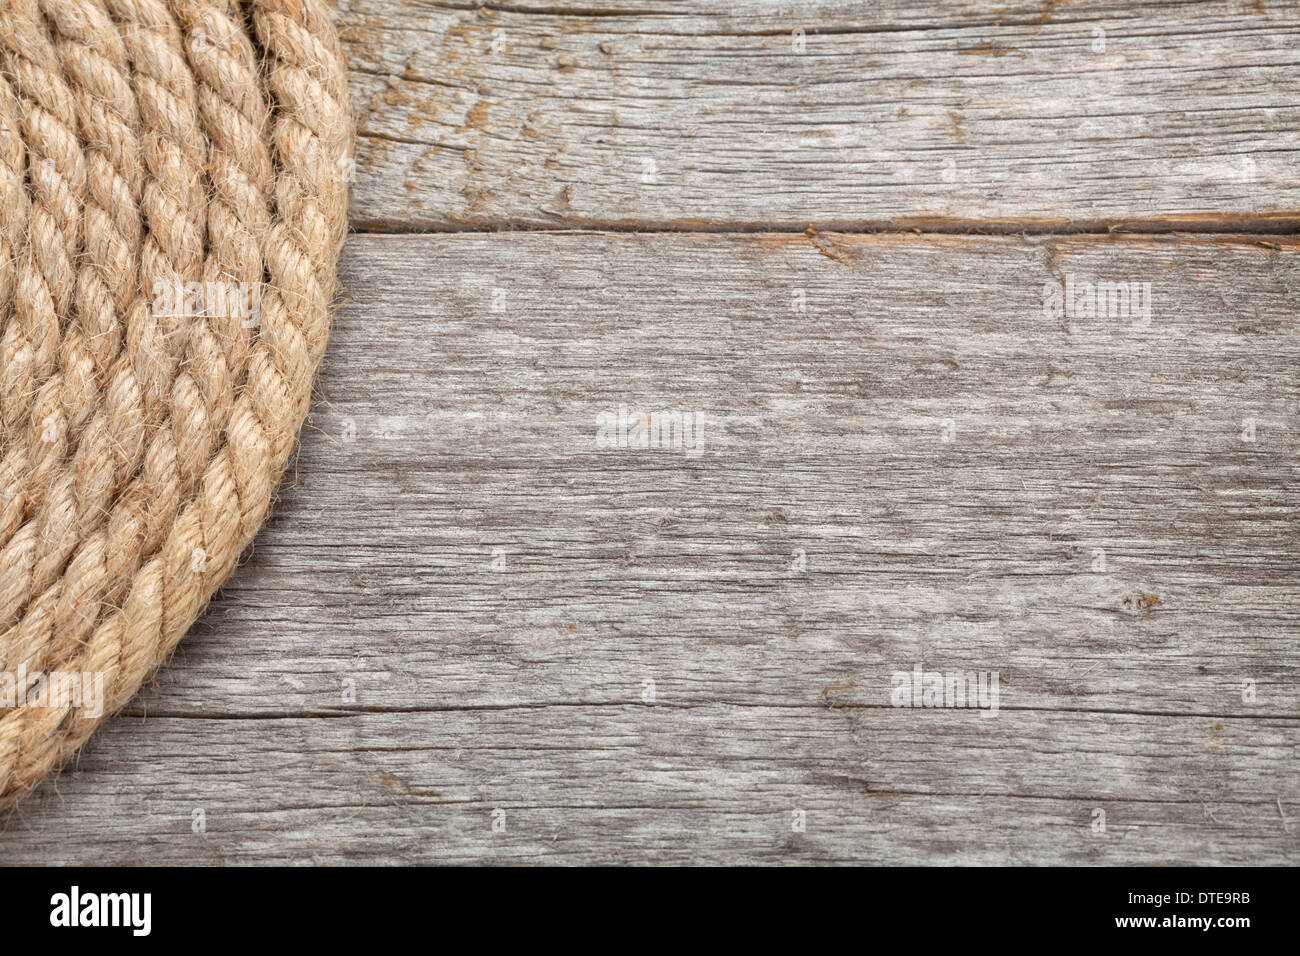 Rollen des Schiffes Seil auf Holz Textur Hintergrund Stockfoto